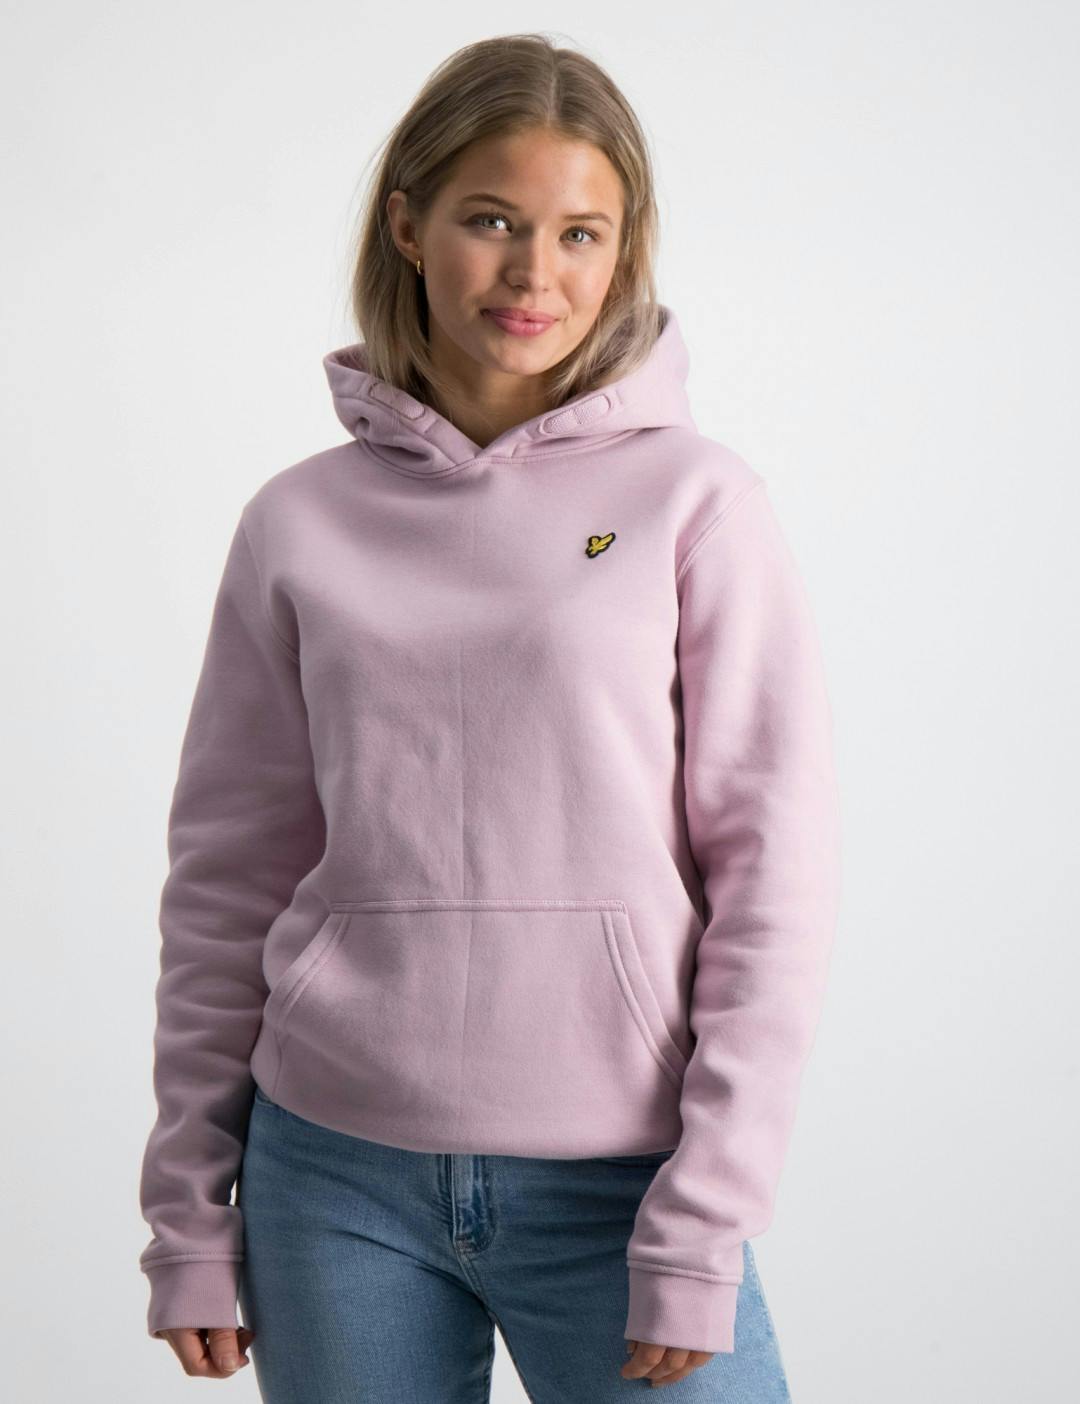 Geleerde Lijken Modieus Roze Classic OTH Hoody Fleece voor Meisjes | Kids Brand Store